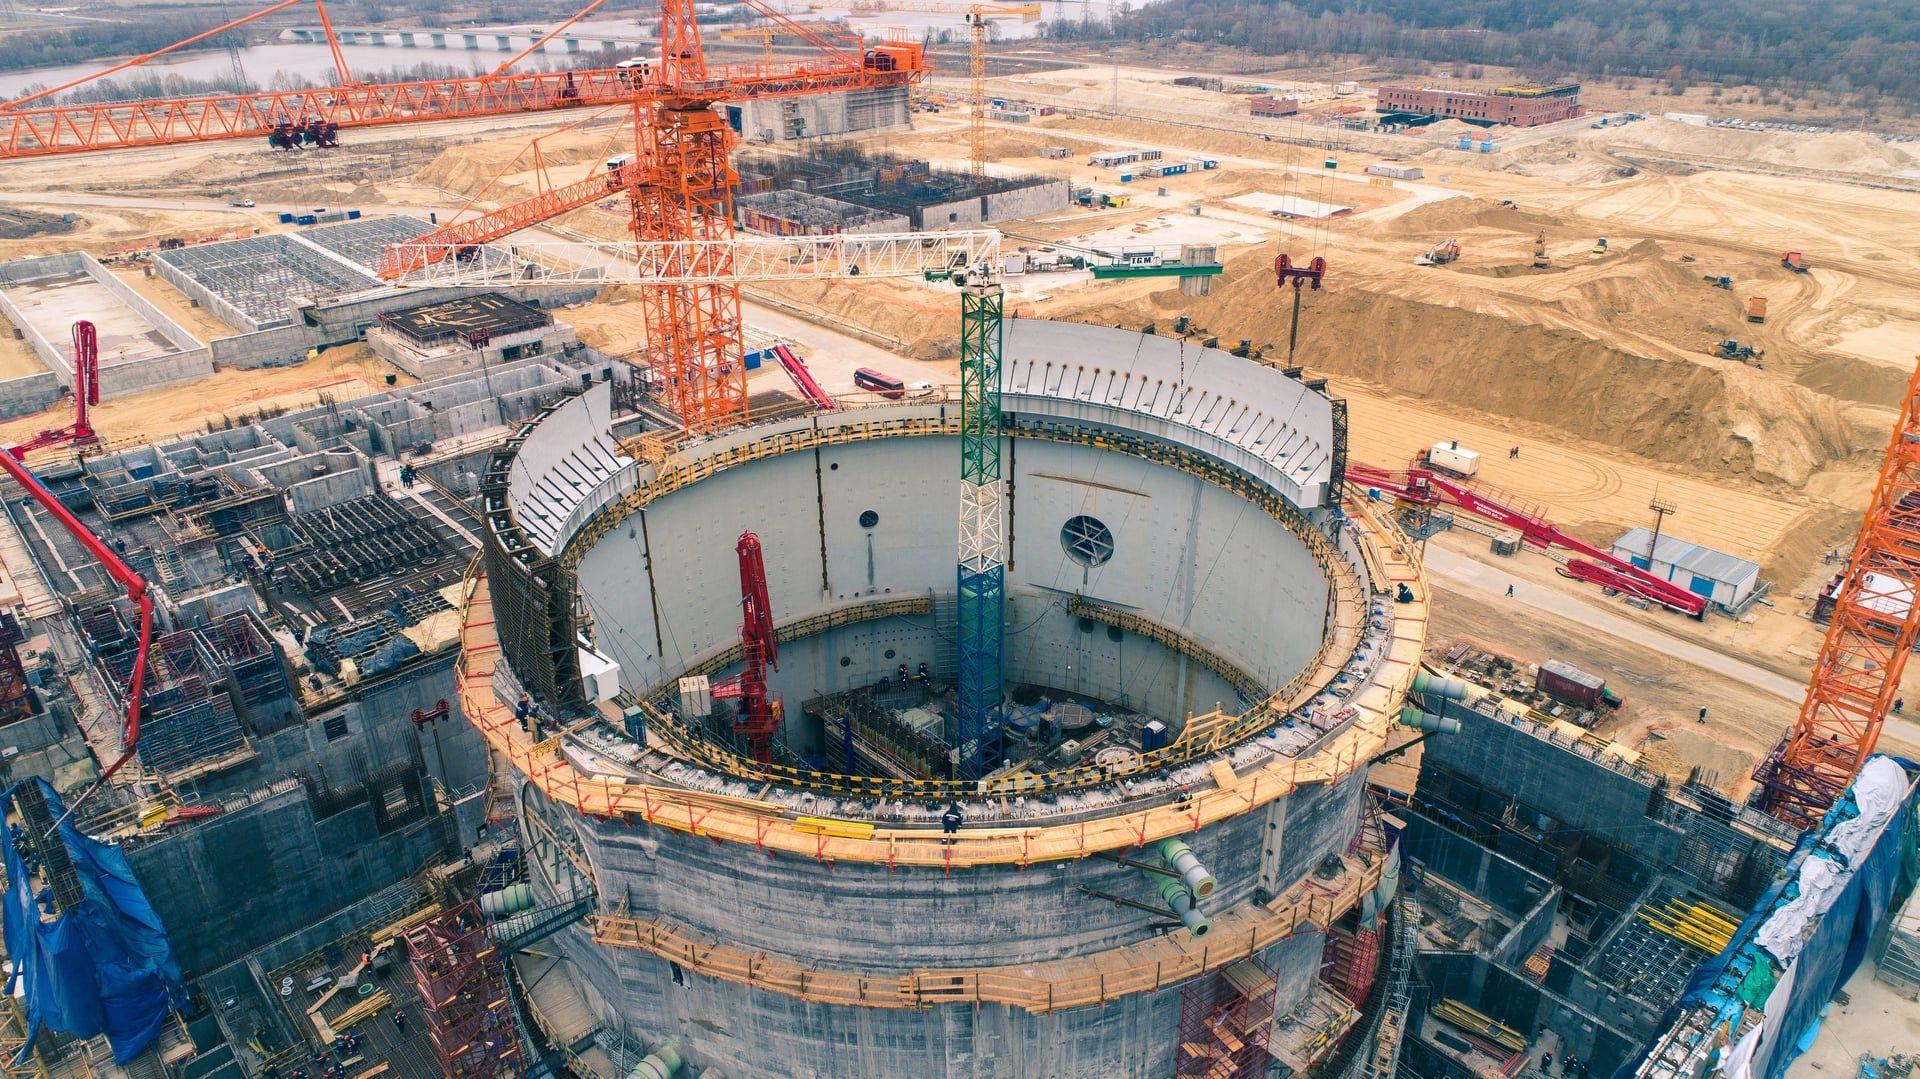 Eronda yangi yadroviy tadqiqot reaktori qurilishi boshlandi